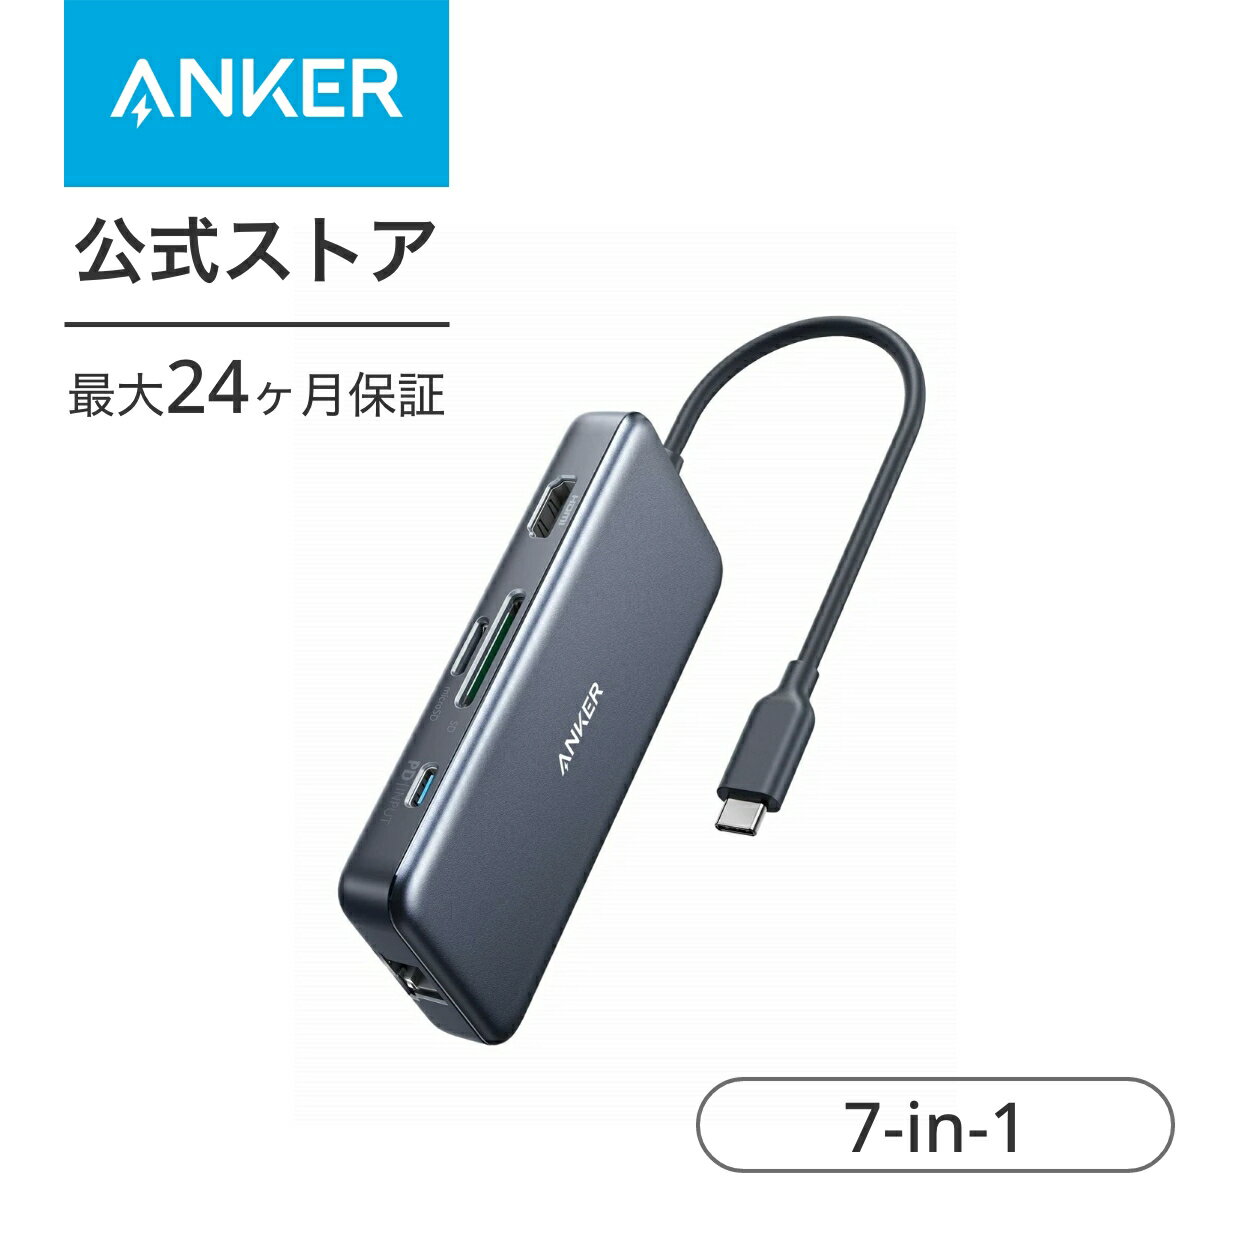 【1 000円OFF 5/16まで】Anker PowerExpand+ 7-in-1 USB-C PD イーサネット ハブ4K対応HDMI出力ポート 60W出力 Power Delivery 対応USB-Cポート 1Gbps イーサネット 2つの USB-A ポート microS…